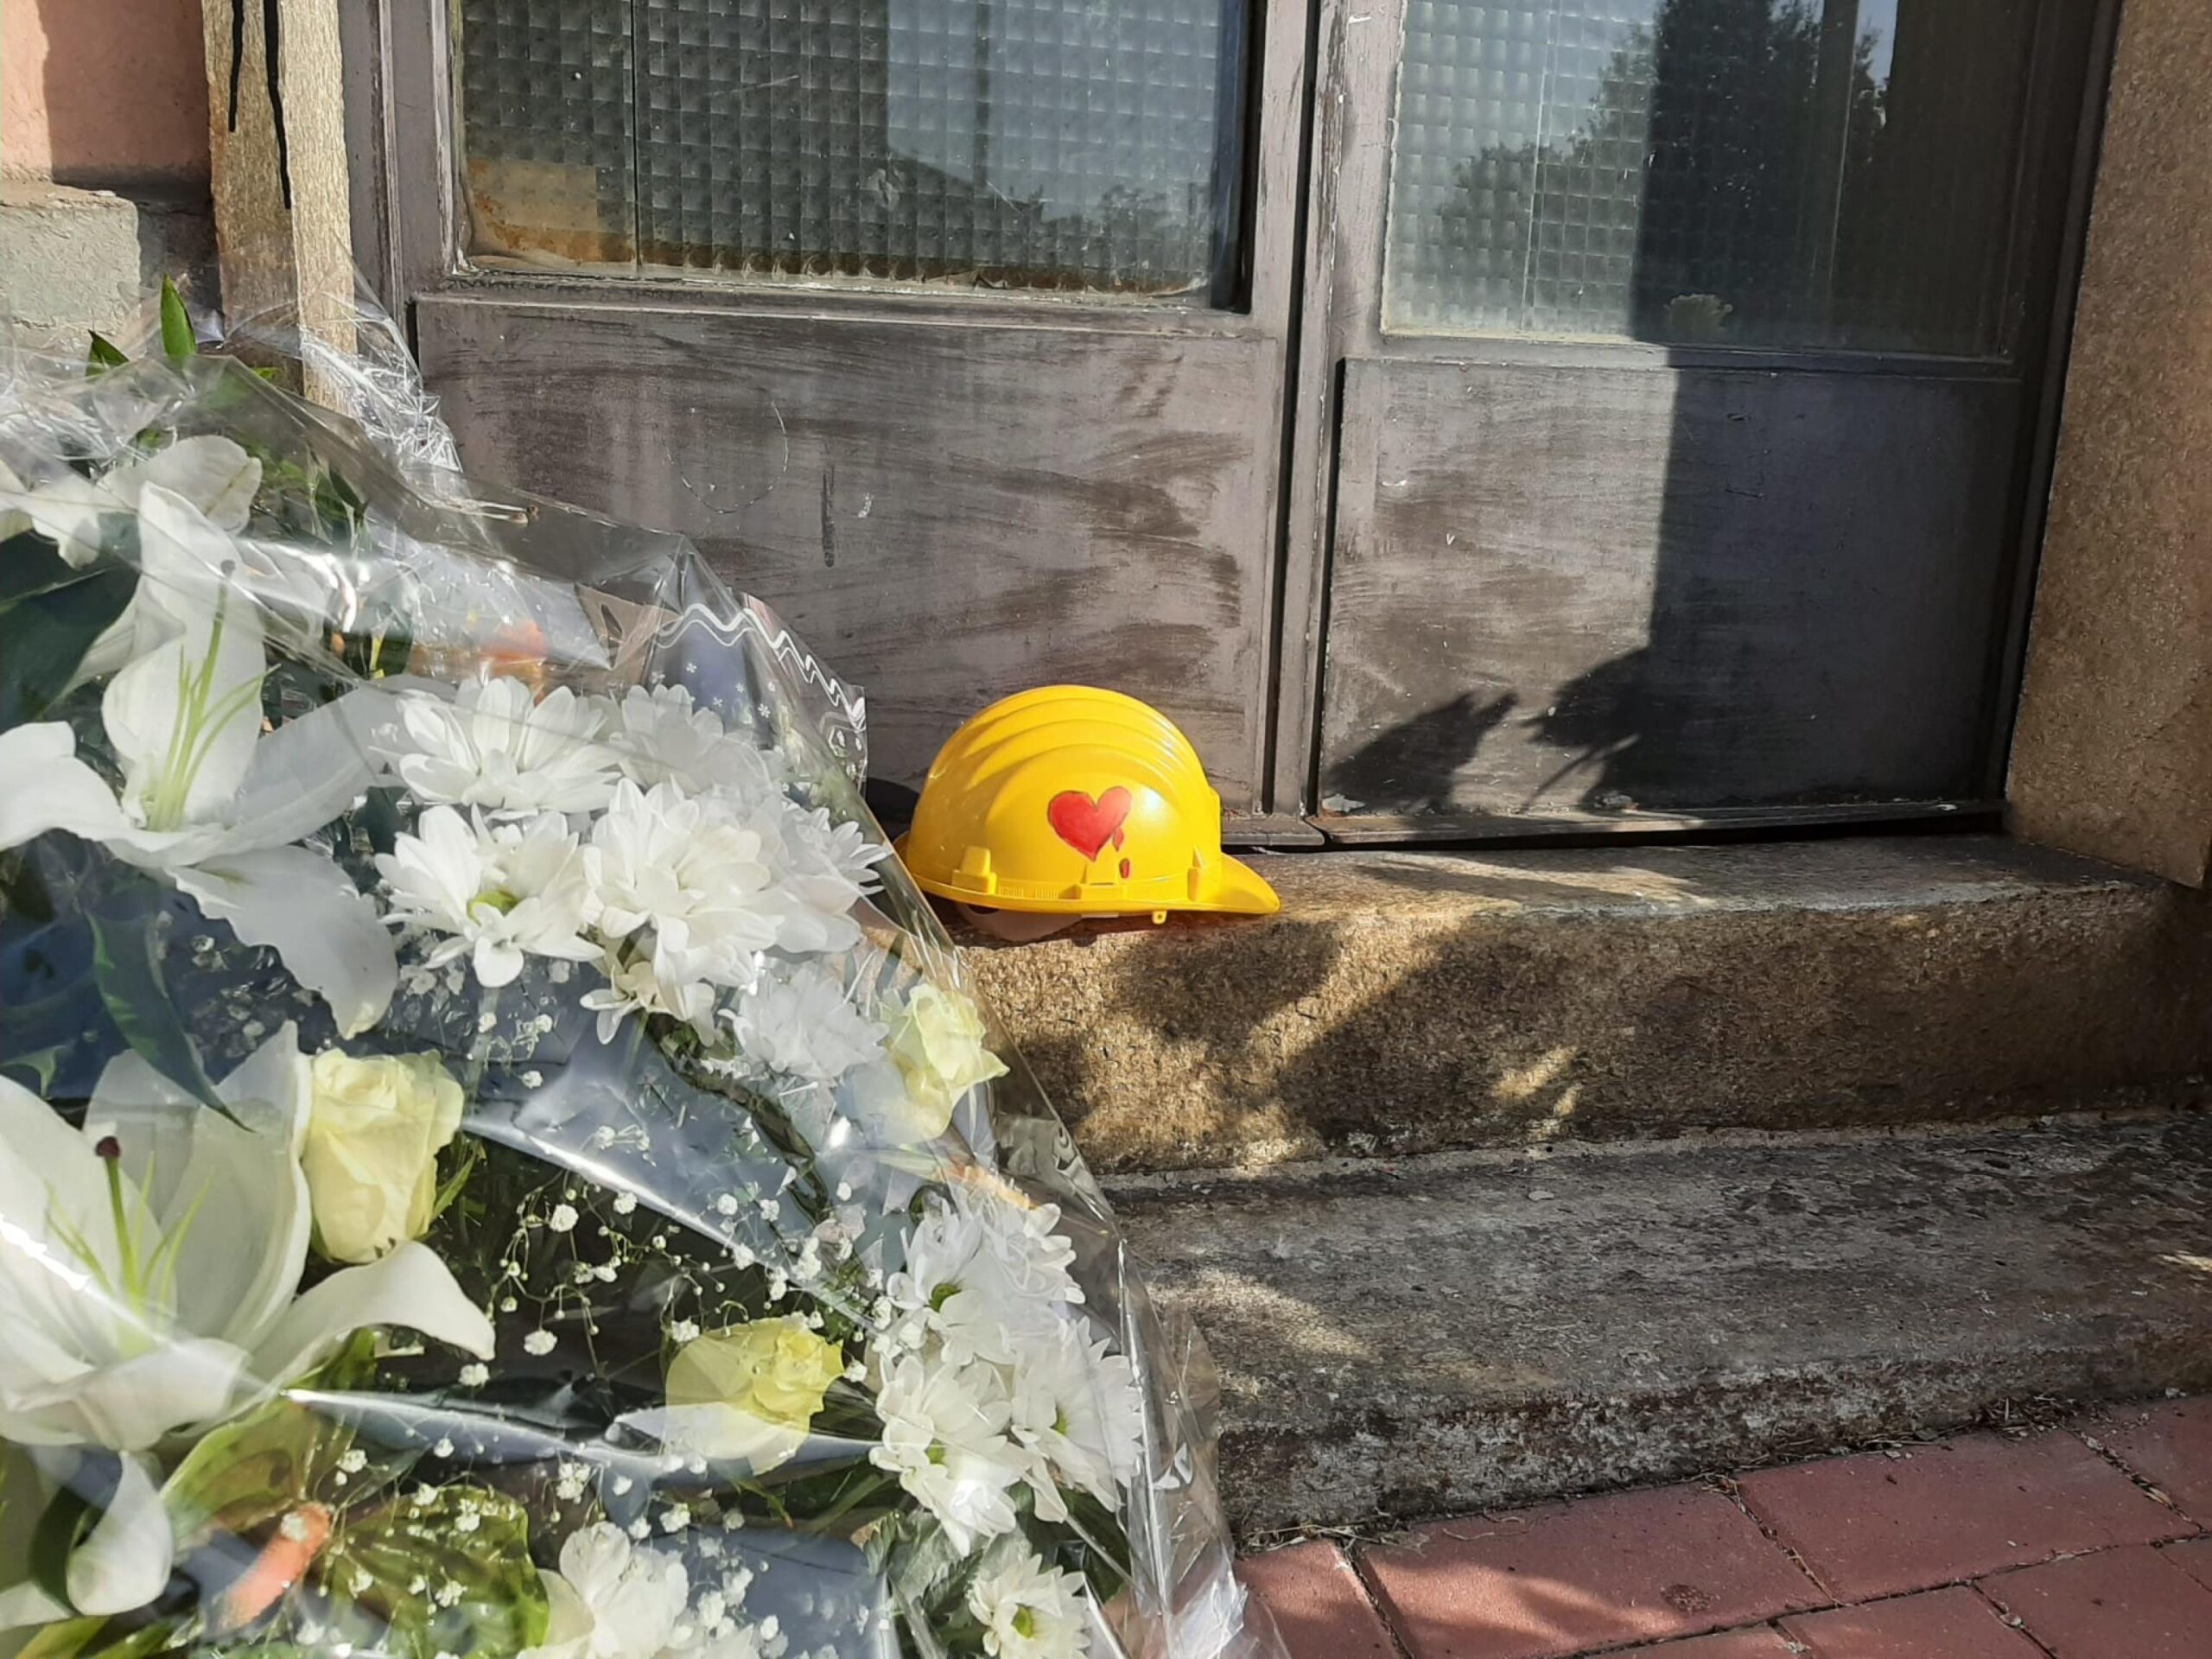 Mazzi di fori e un casco di protezione giallo, con disegnato su un lato un cuore rosso che sanguina, su di uno scalino di una porta d'ingresso della stazione di Brandizzo, nel Torinese, dove cinque operai sono morti travolti da un treno, 3 settembre 2023. ANSA/CLAUDIA TOMATIS